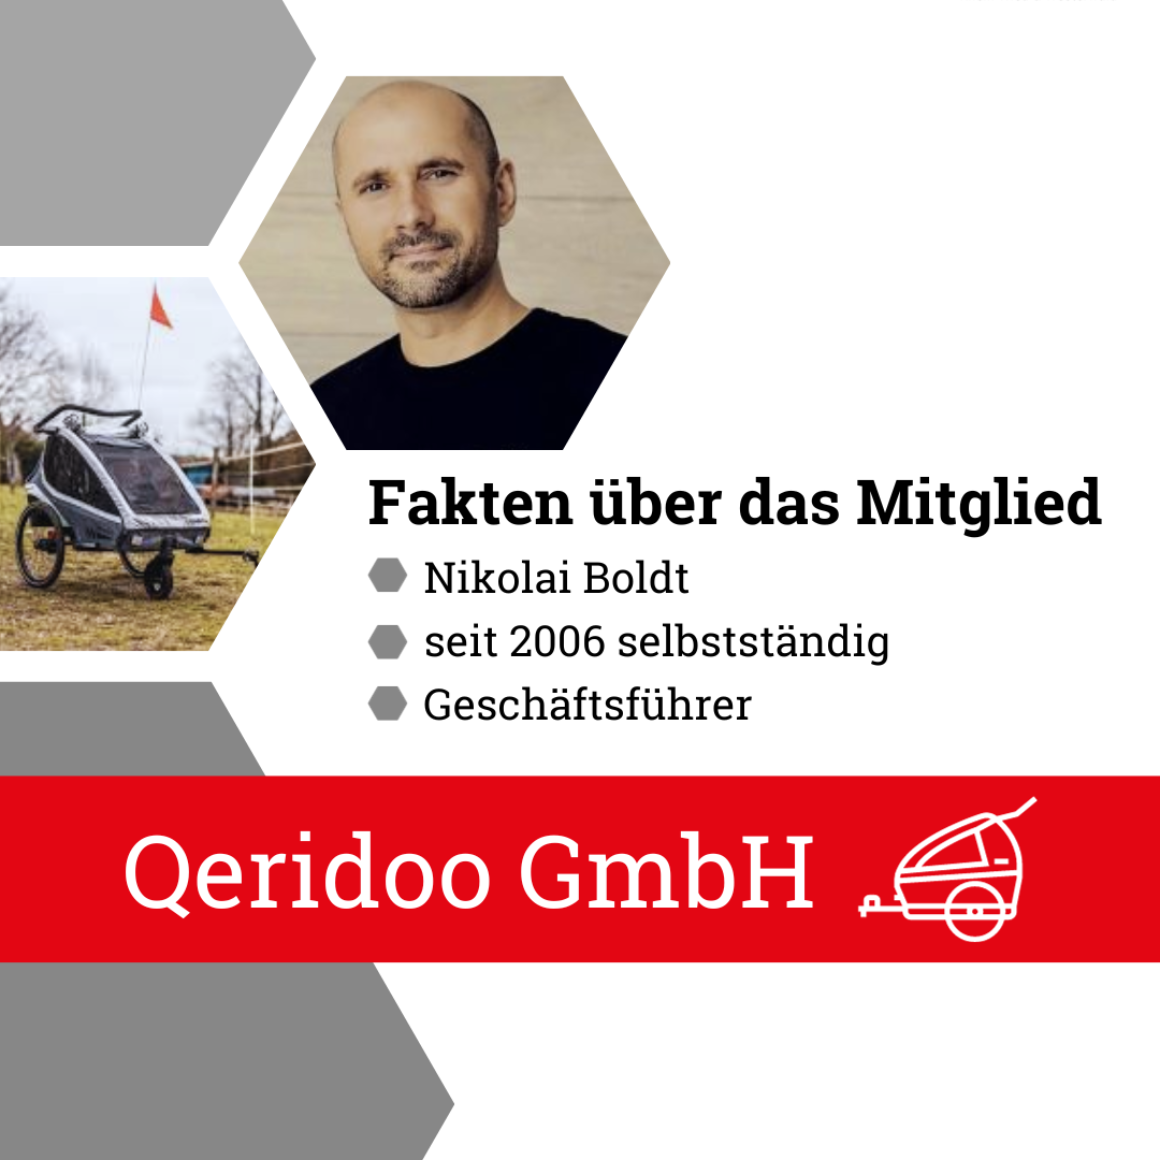 Herzlich willkommen im BVMW Rhein-Wied und Westerwald - Nikolai Boldt,  Geschäftsführer Qeridoo